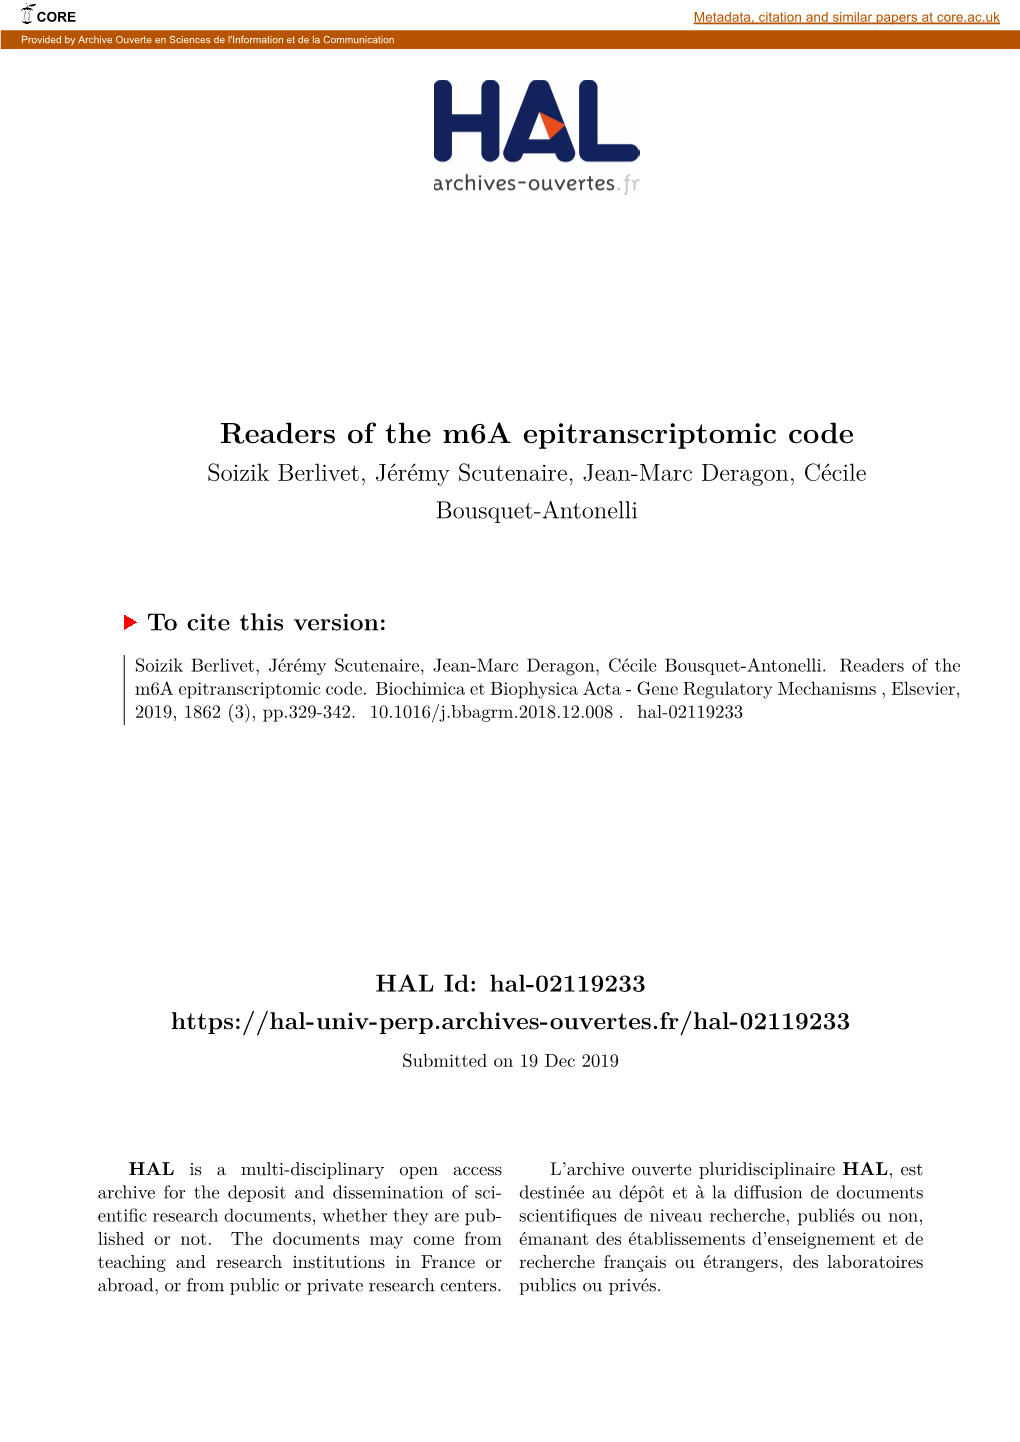 Readers of the M6a Epitranscriptomic Code Soizik Berlivet, Jérémy Scutenaire, Jean-Marc Deragon, Cécile Bousquet-Antonelli